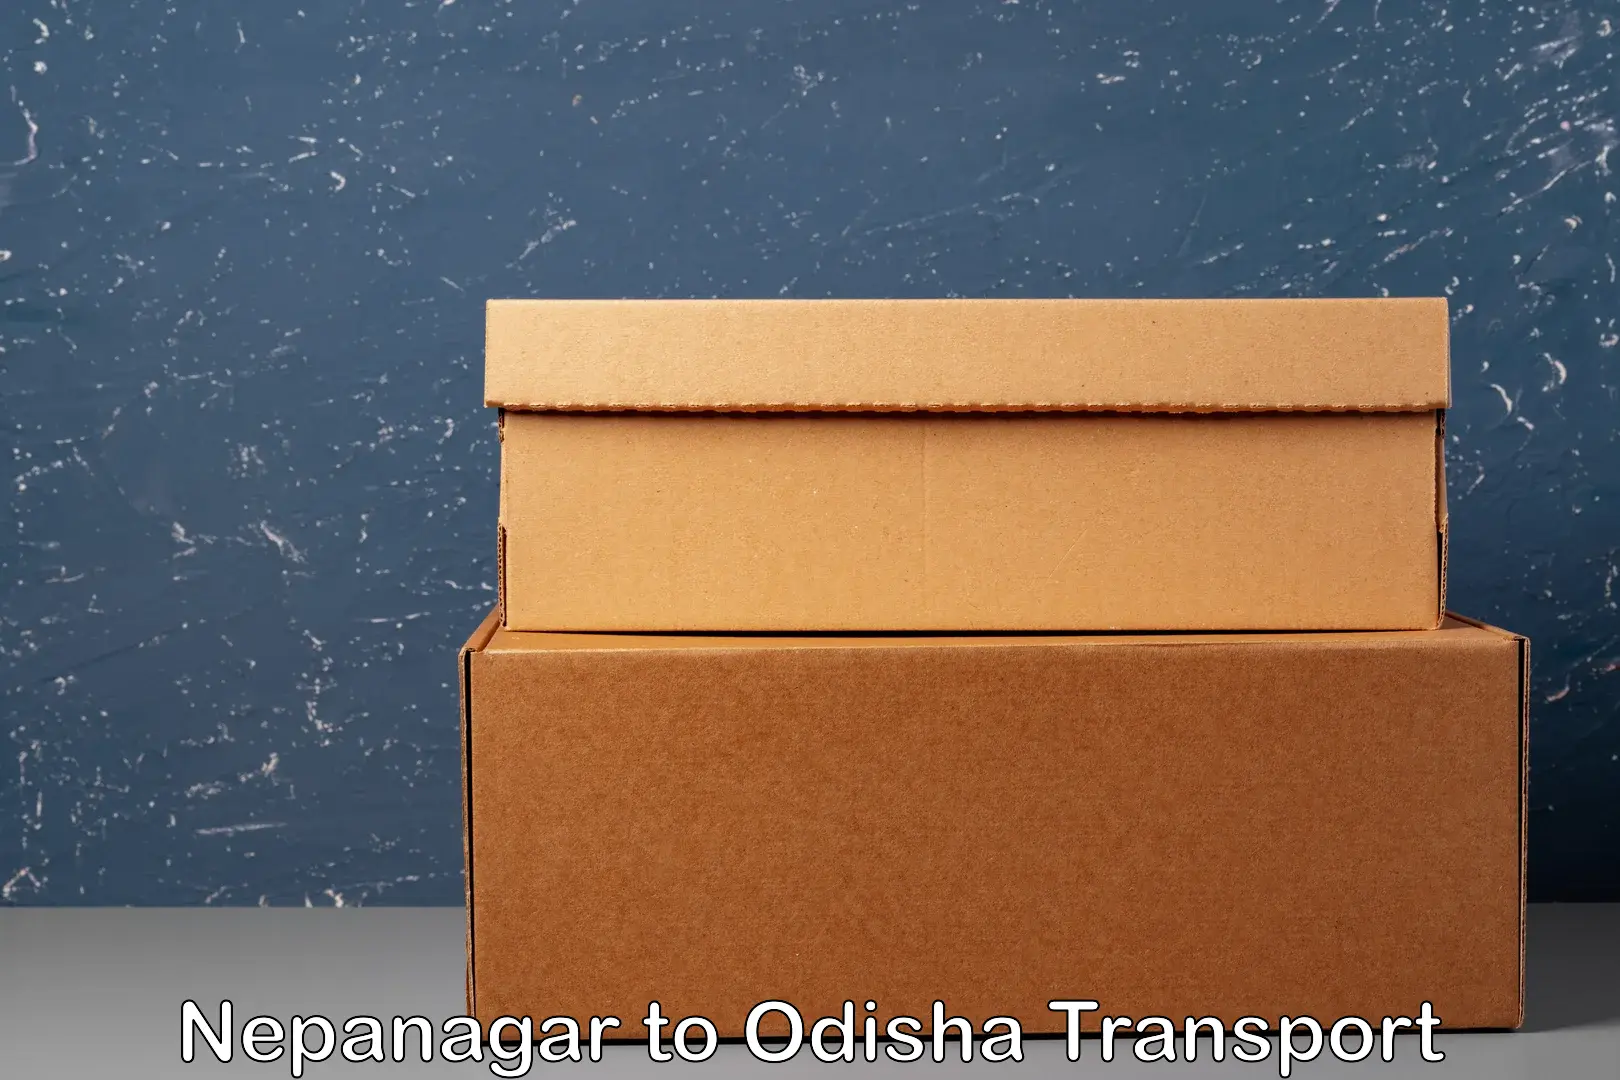 Cargo transportation services Nepanagar to Odisha